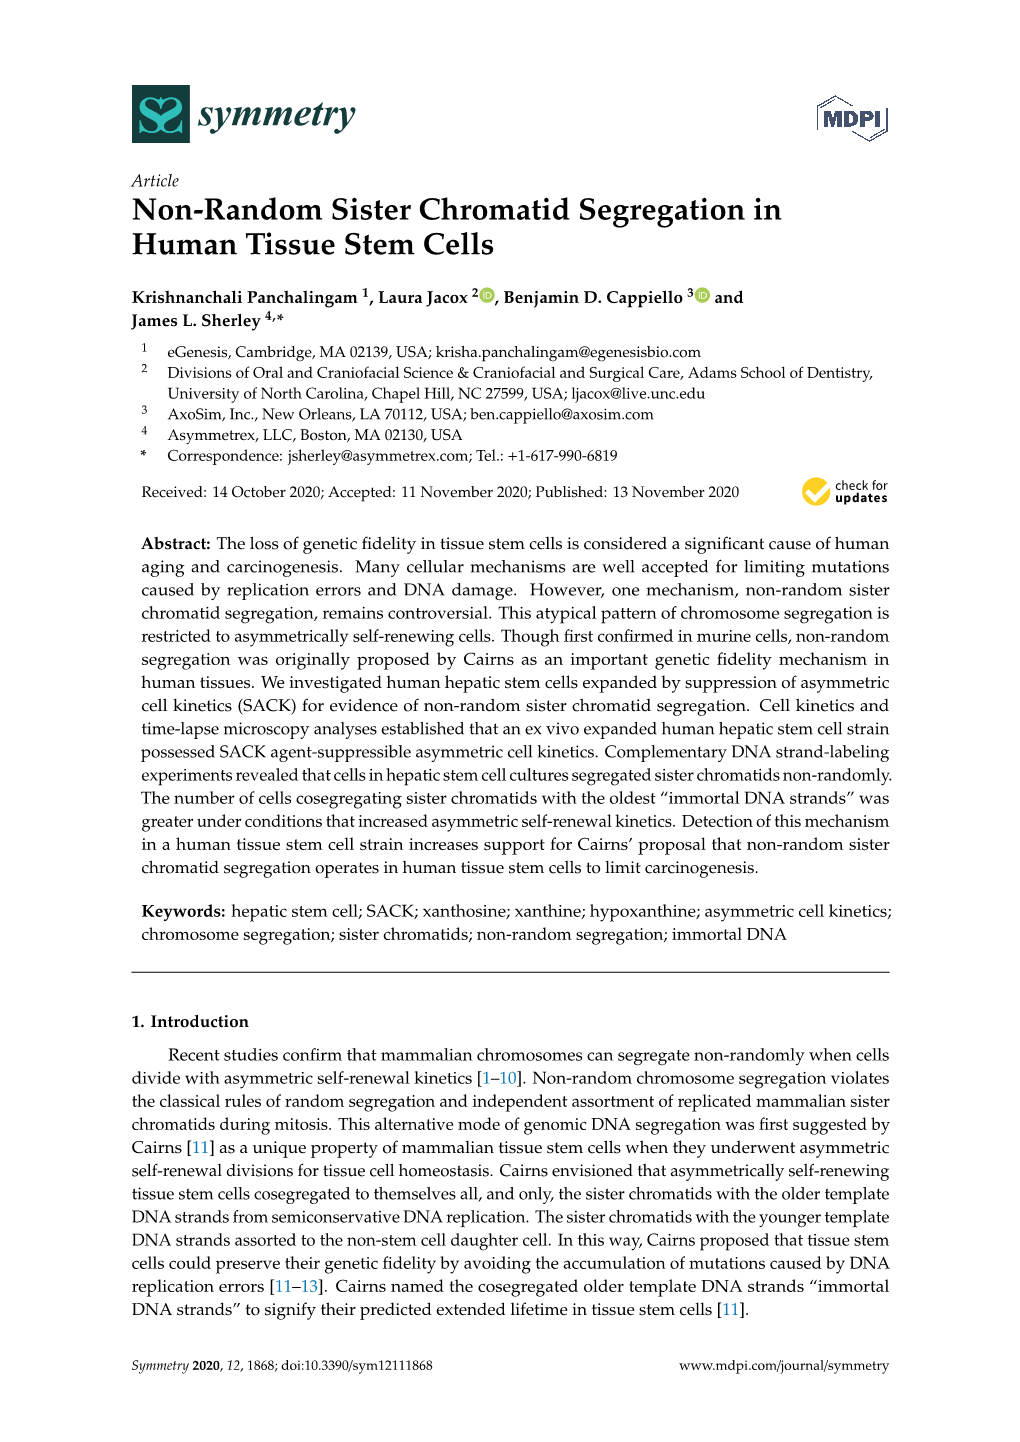 Non-Random Sister Chromatid Segregation in Human Tissue Stem Cells